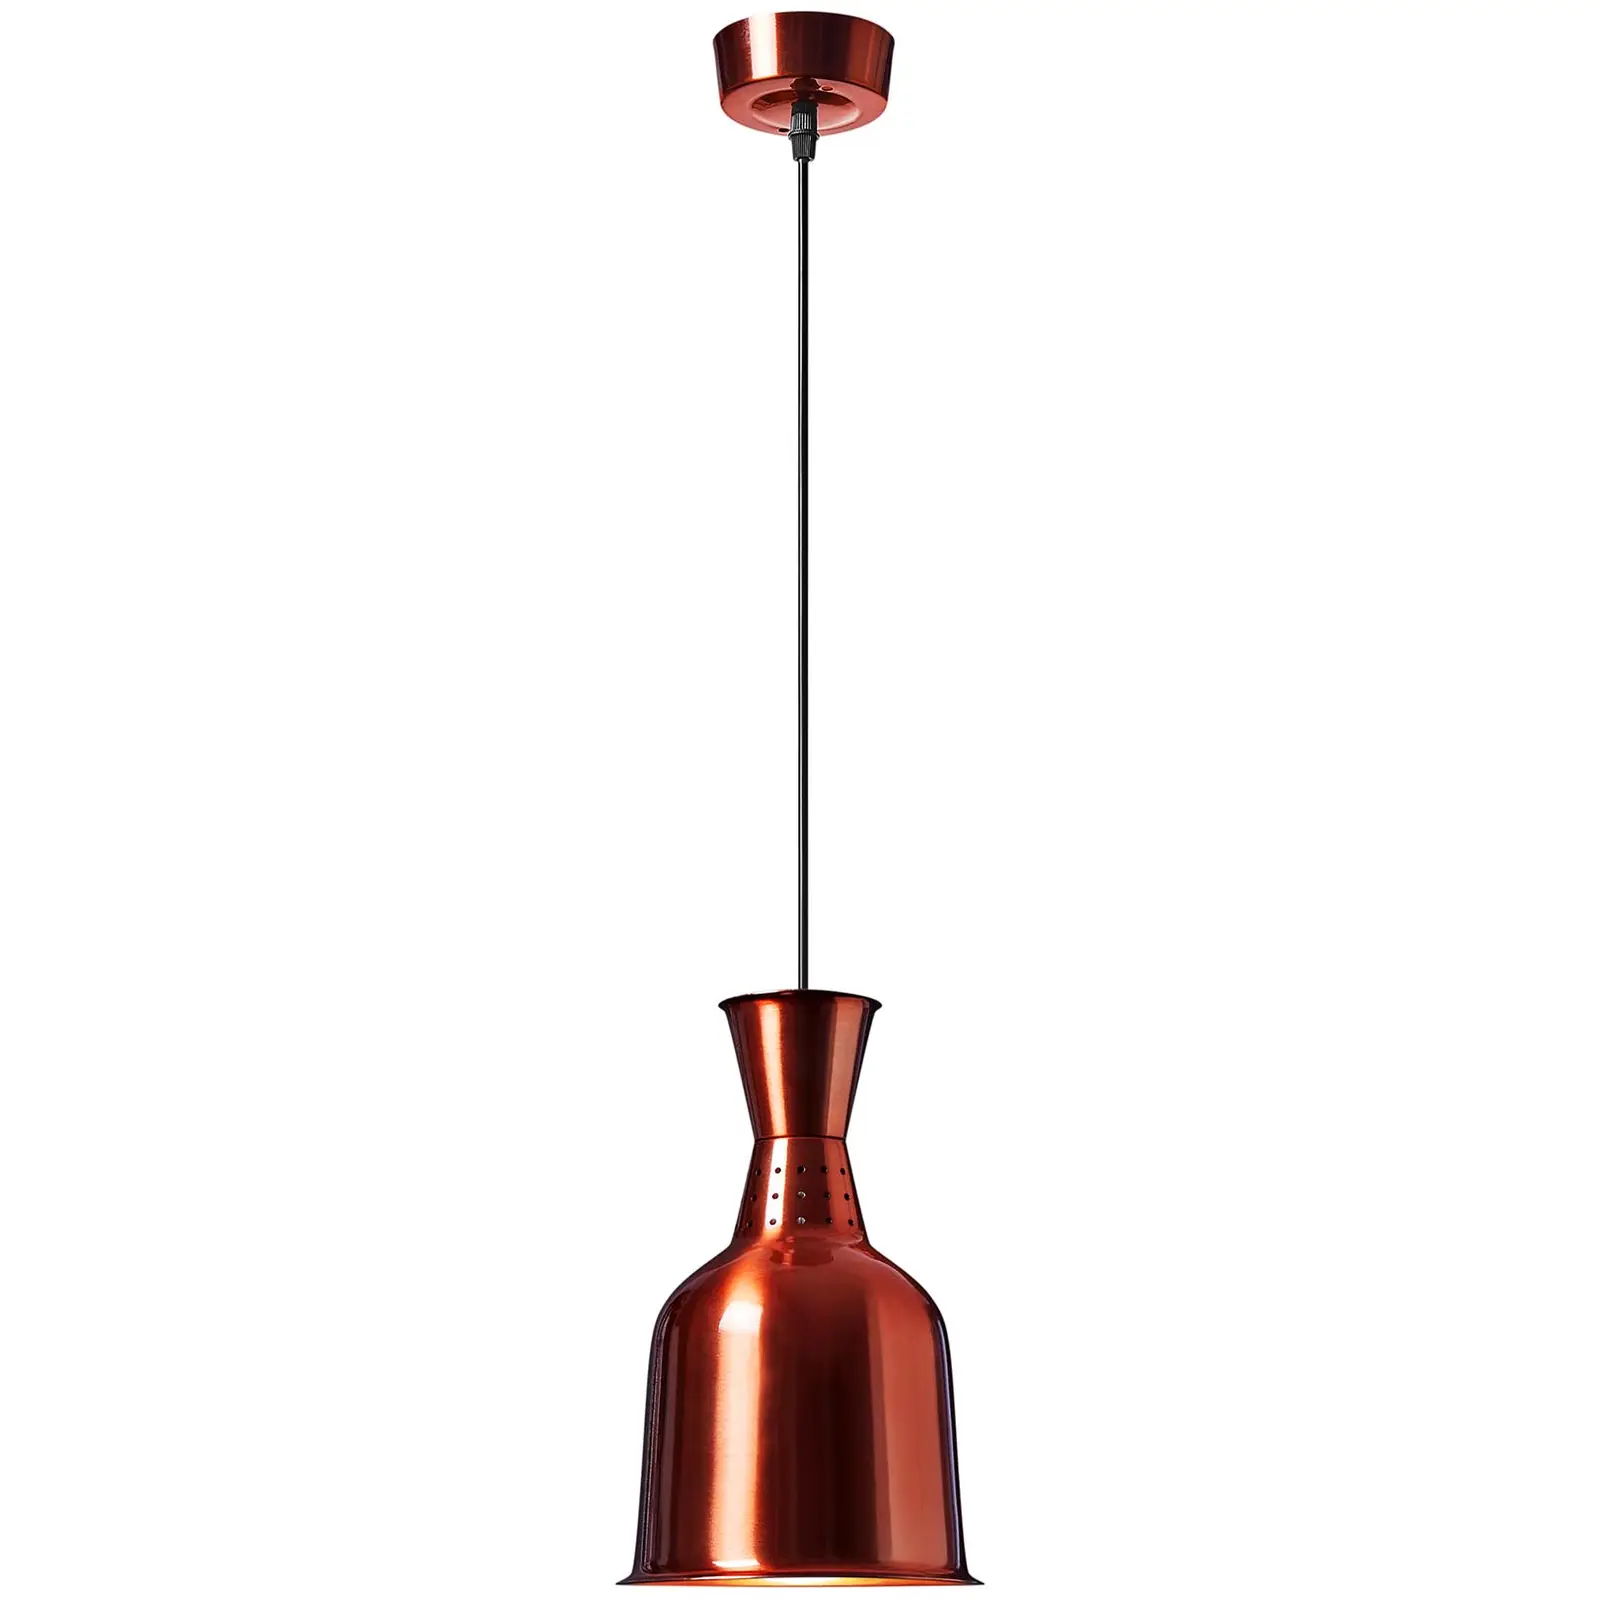 Lâmpada aquecedora de alimentos - aspeto bronze - 19 x 19 x 29 cm - Royal Catering - Aço